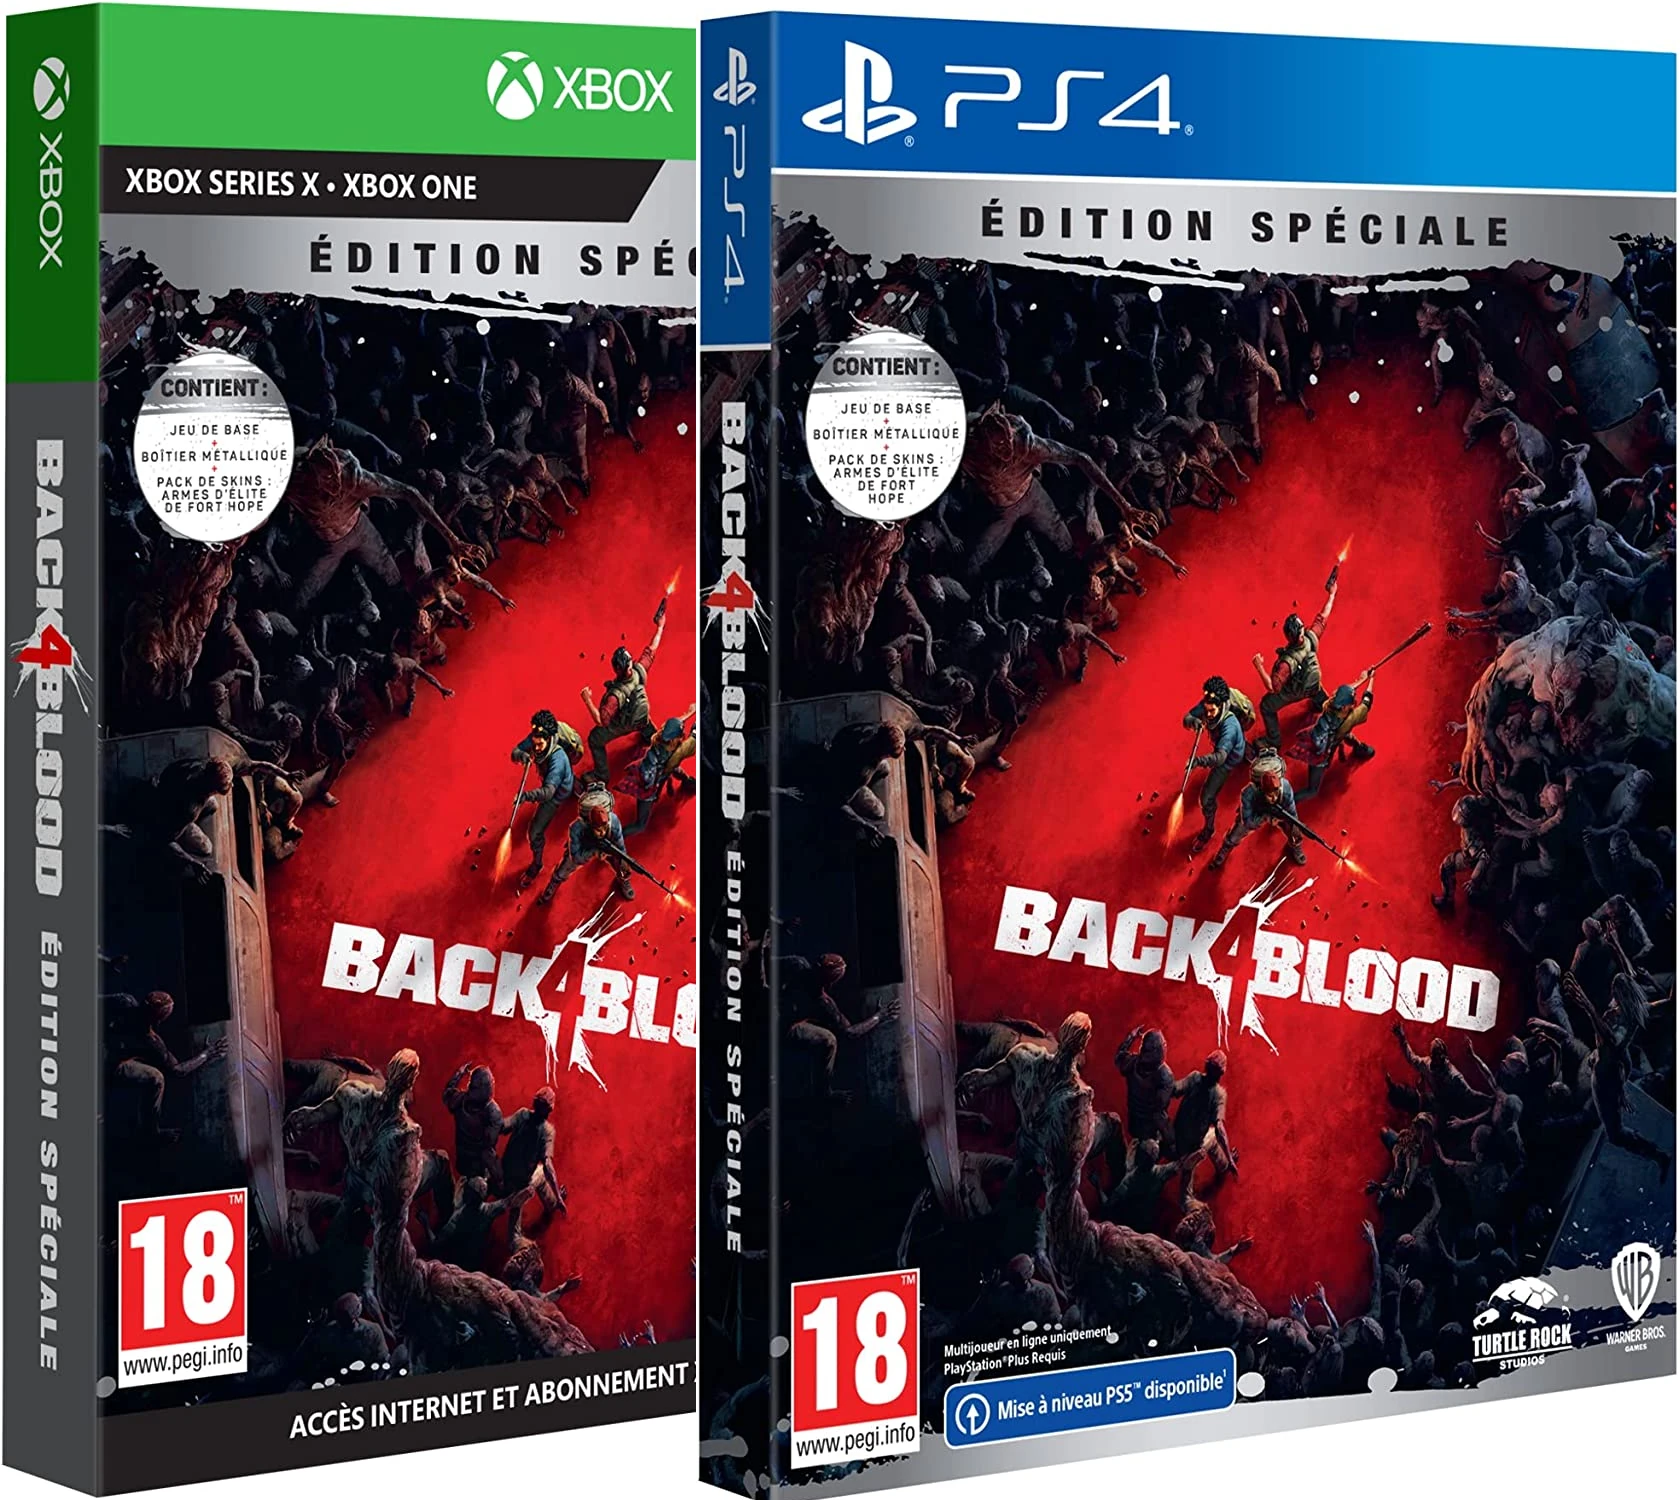 Back 4 Blood - Edition Spéciale Steelbook (5,99€ sur PS4)